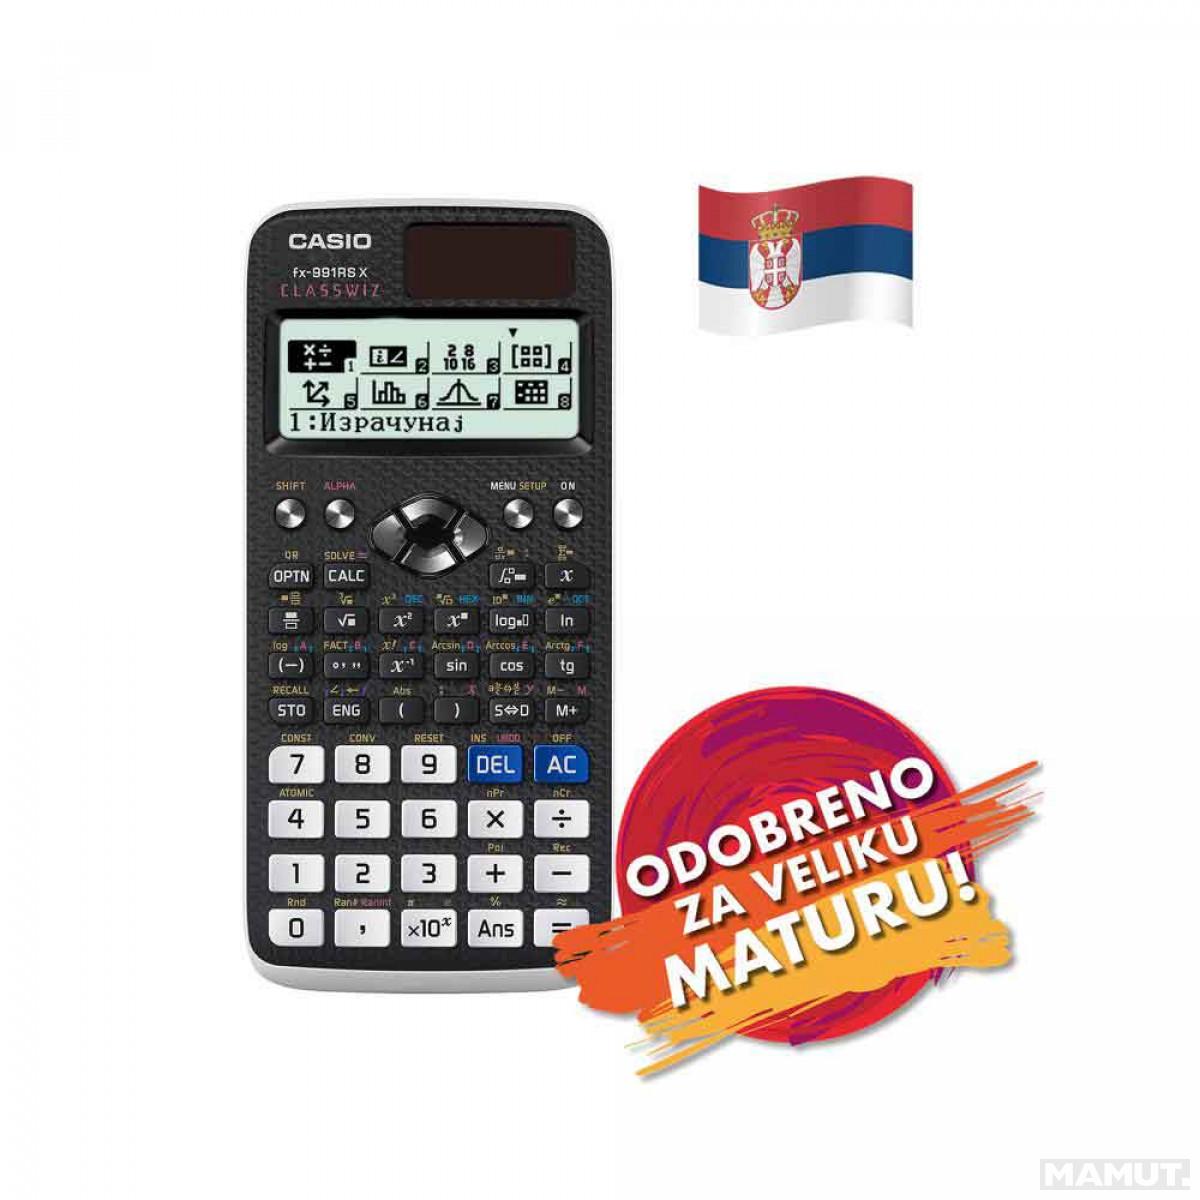 Ljubavni kalkulator igra PLAMEN Kalkulator